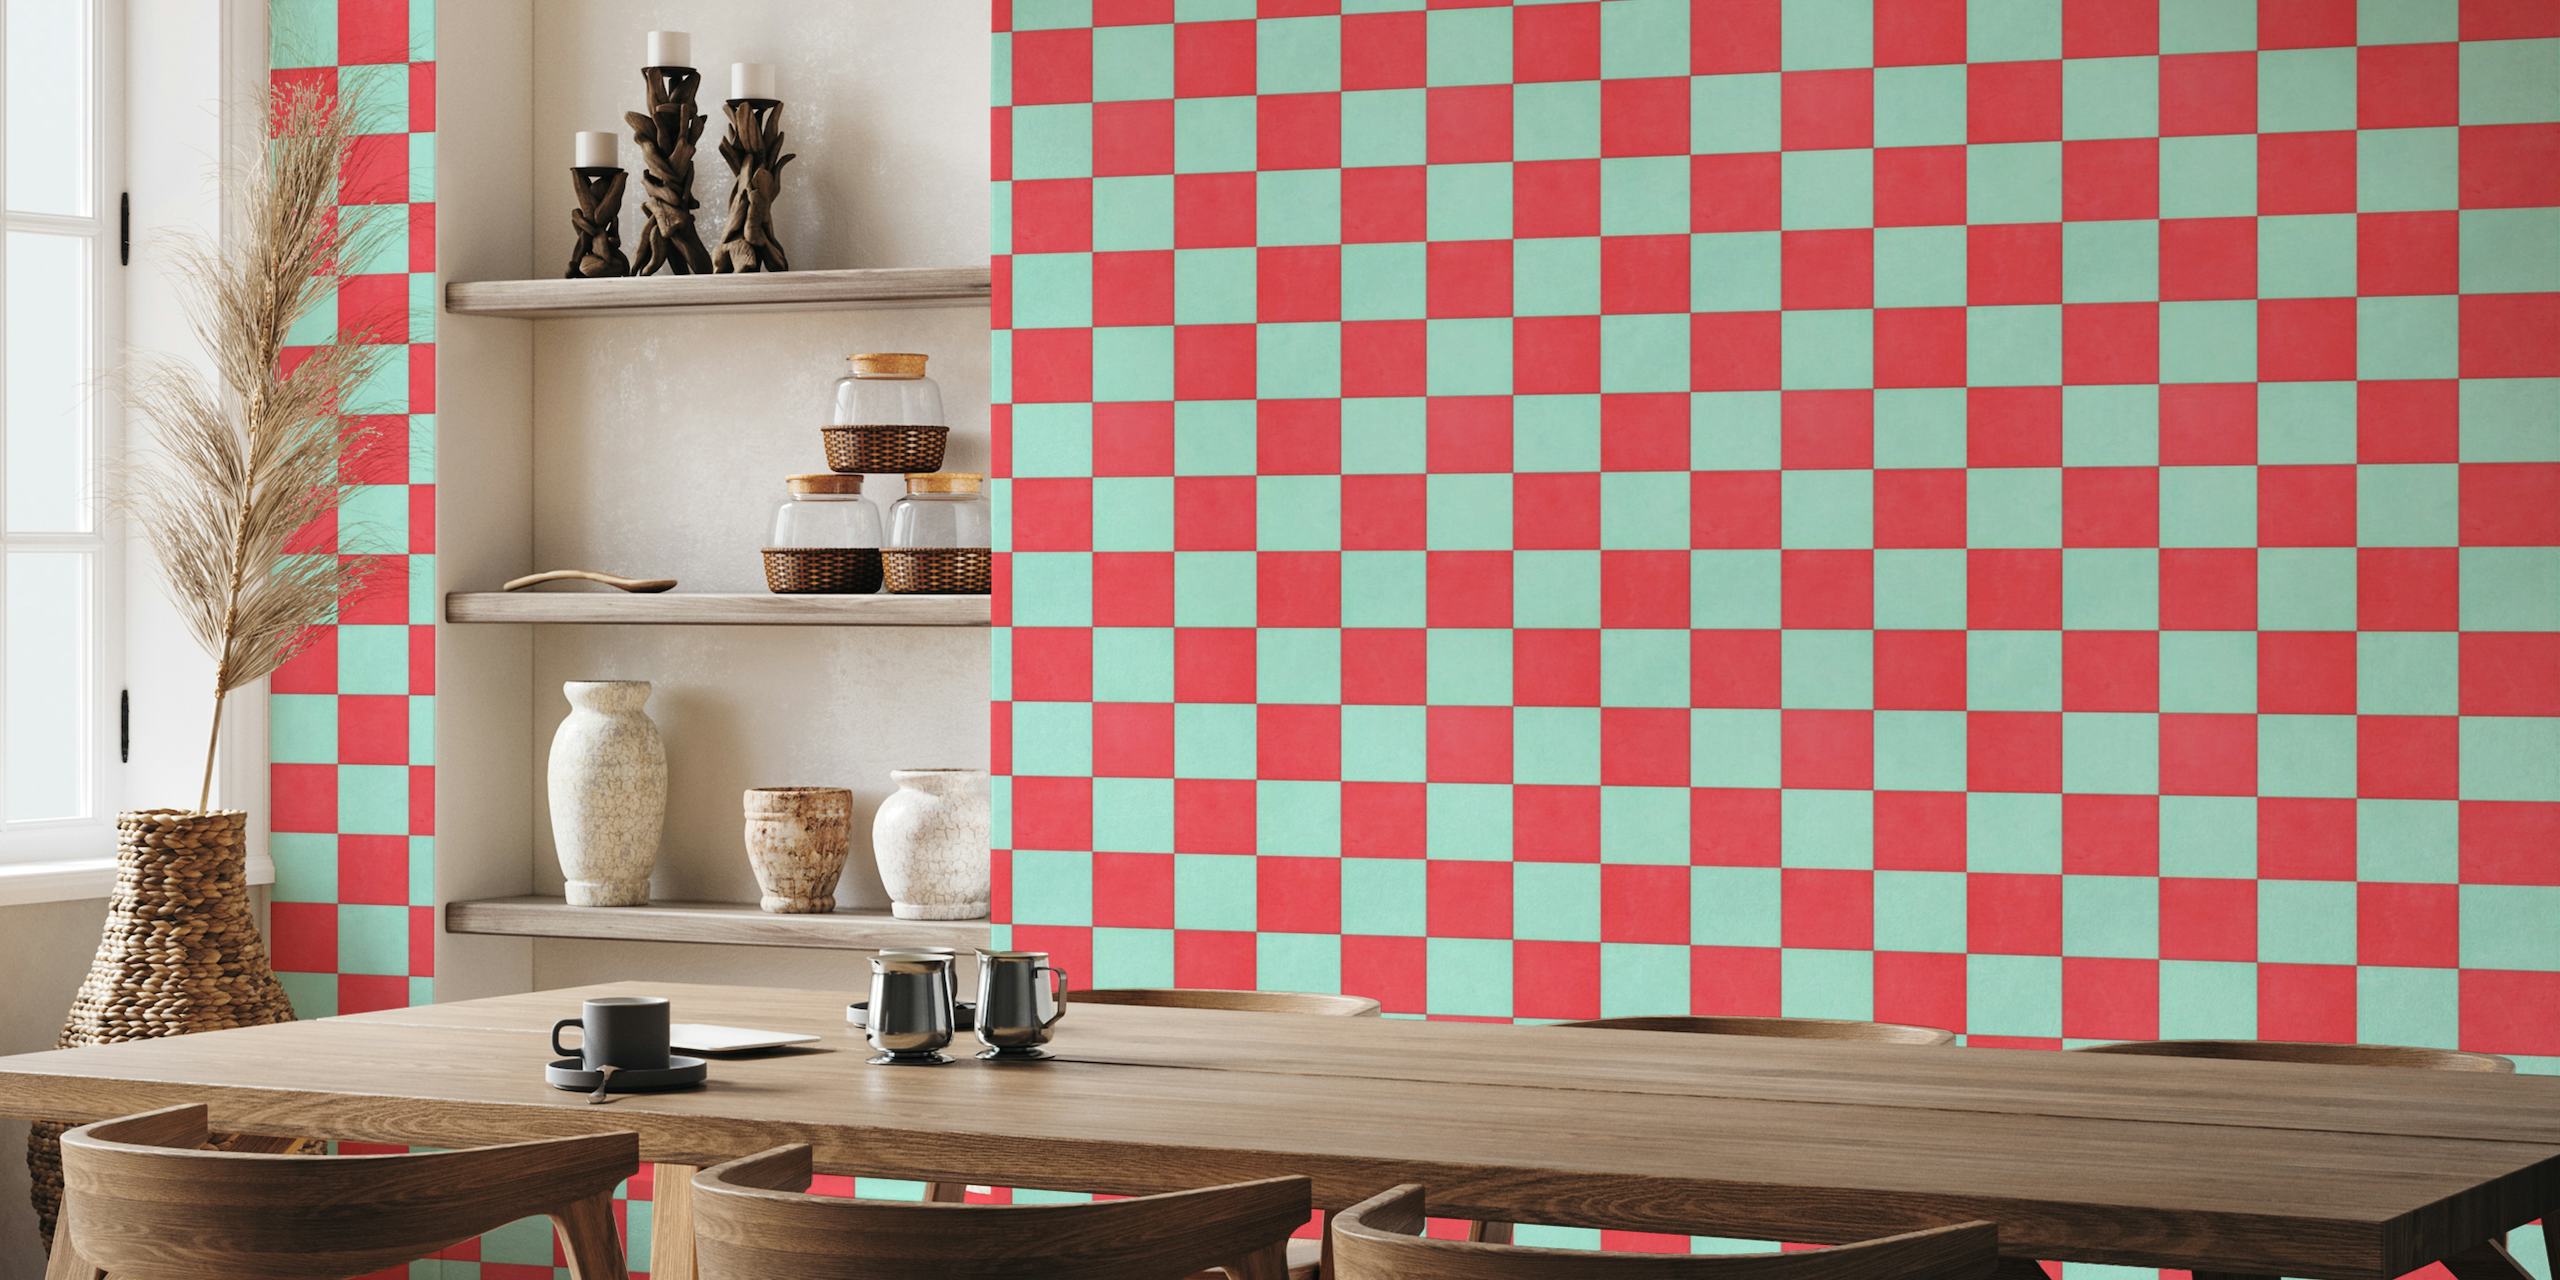 Muurschildering met rood en aqua schaakbordpatroon voor thuis- en zakelijke interieurs